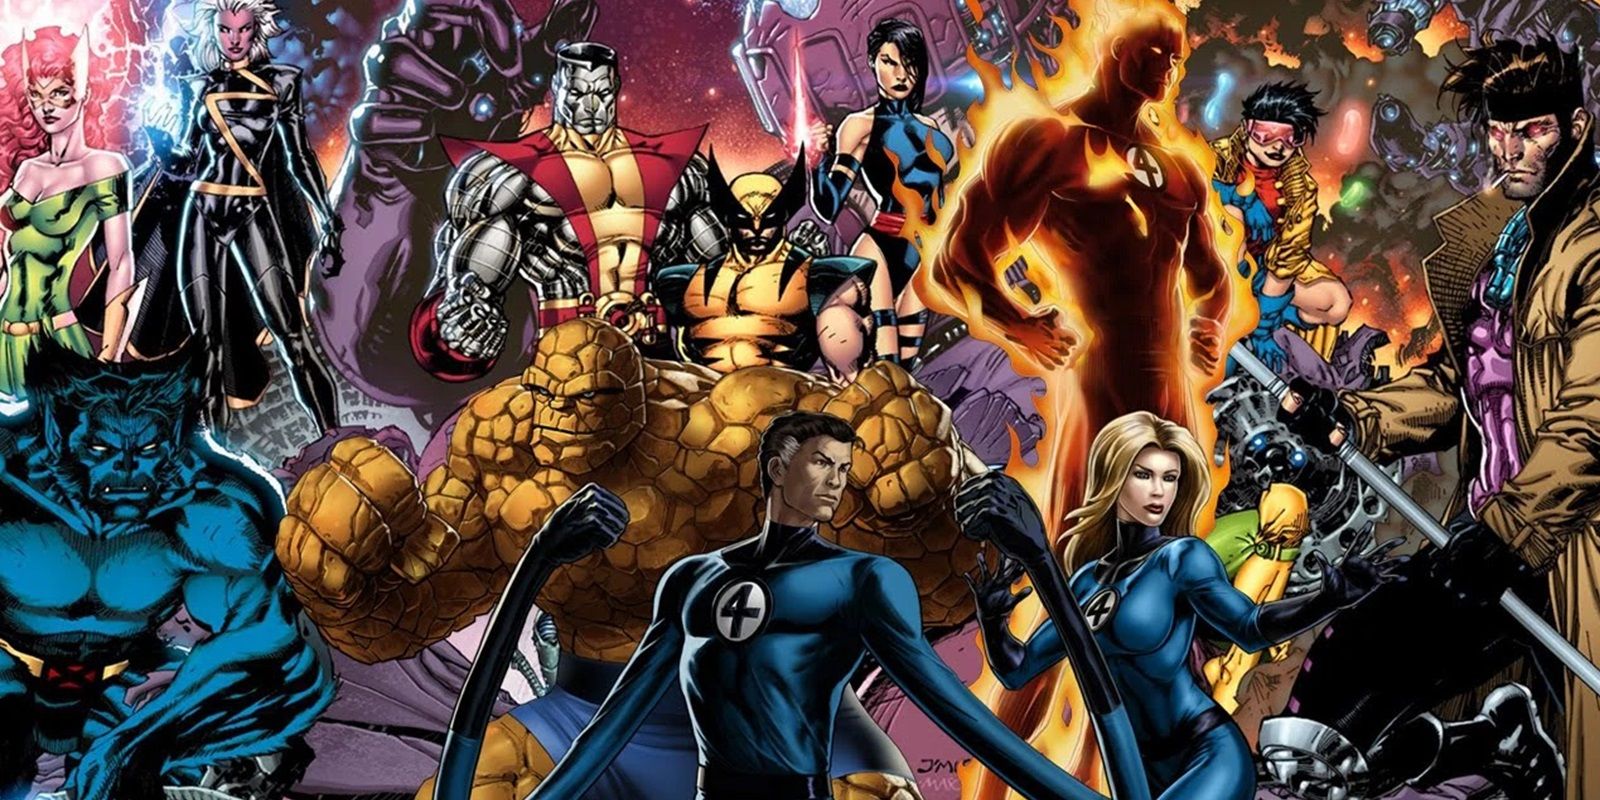 Imagen destacada: gran collage que muestra a los Cuatro Fantásticos rodeados de miembros de los X-Men